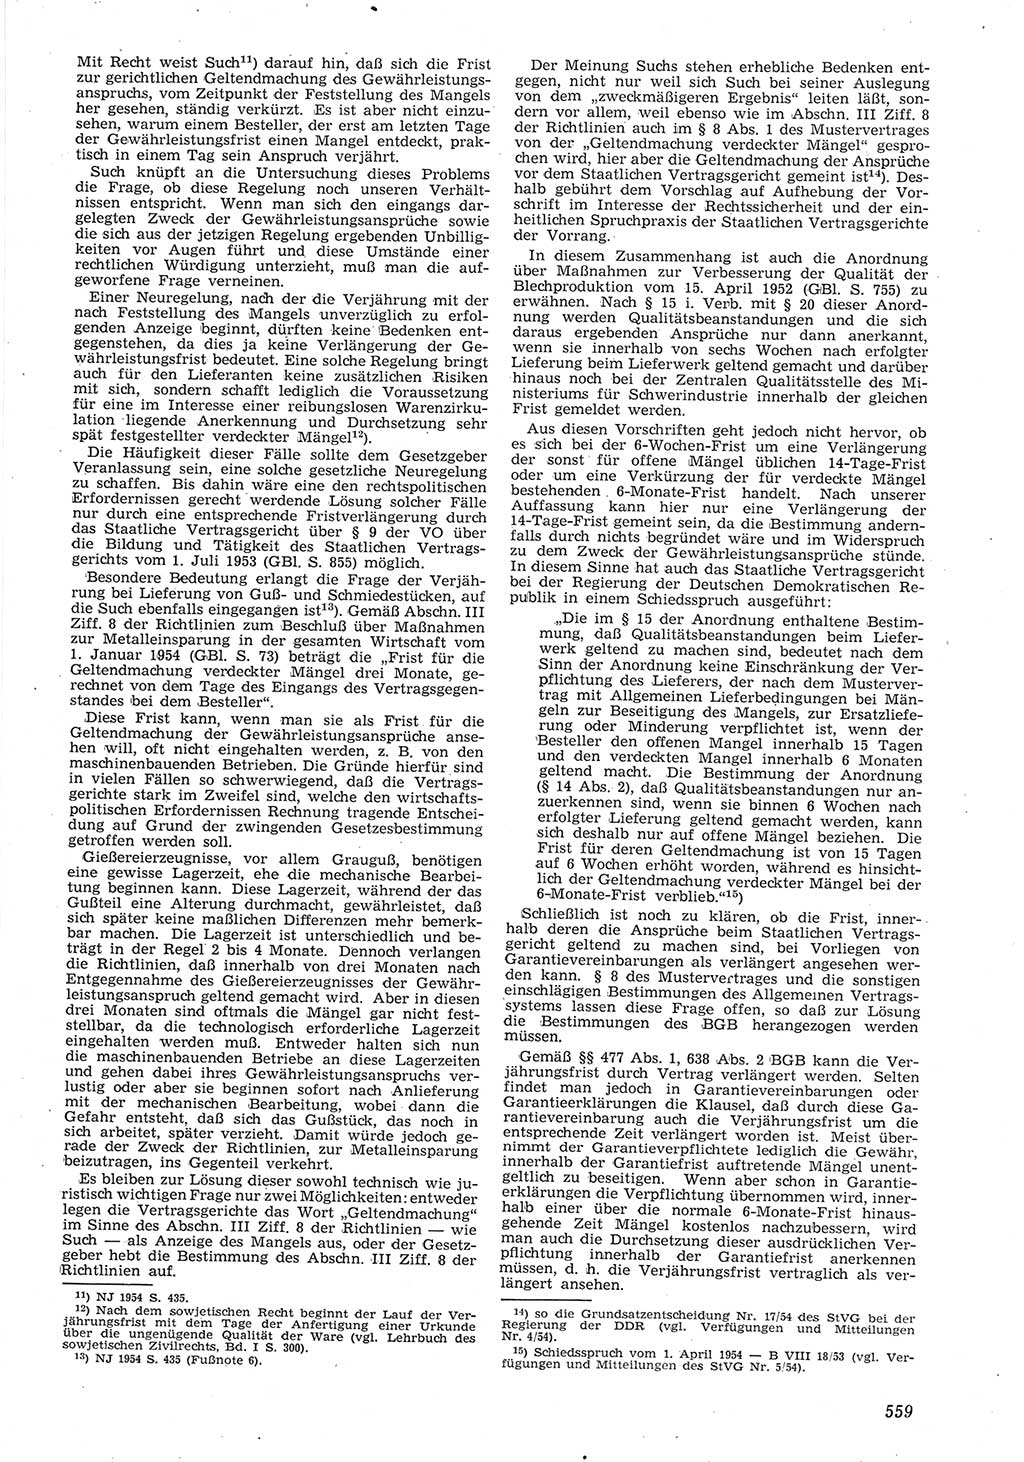 Neue Justiz (NJ), Zeitschrift für Recht und Rechtswissenschaft [Deutsche Demokratische Republik (DDR)], 8. Jahrgang 1954, Seite 559 (NJ DDR 1954, S. 559)